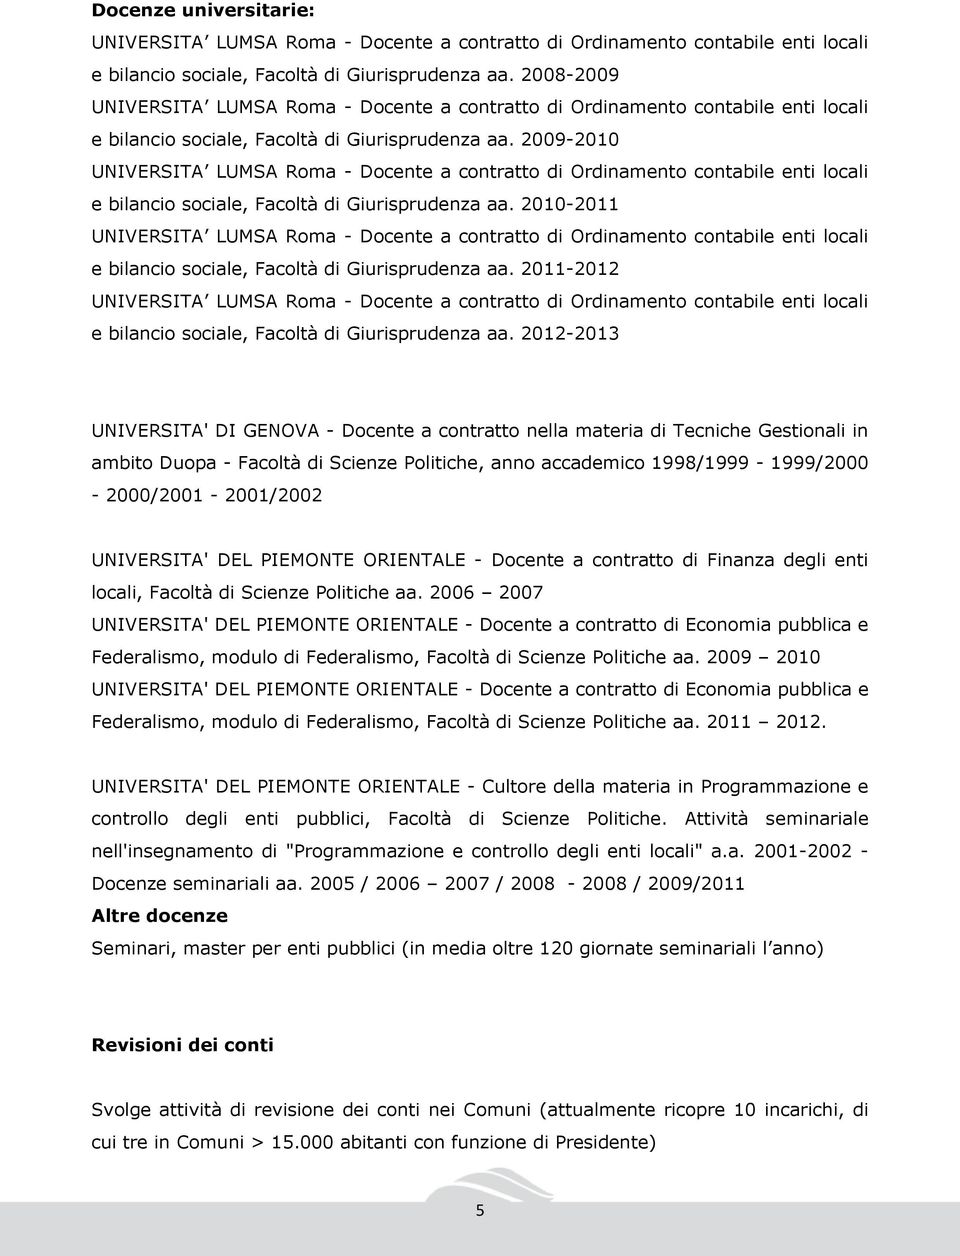 2012-2013 UNIVERSITA' DI GENOVA - Docente a contratto nella materia di Tecniche Gestionali in ambito Duopa - Facoltà di Scienze Politiche, anno accademico 1998/1999-1999/2000-2000/2001-2001/2002